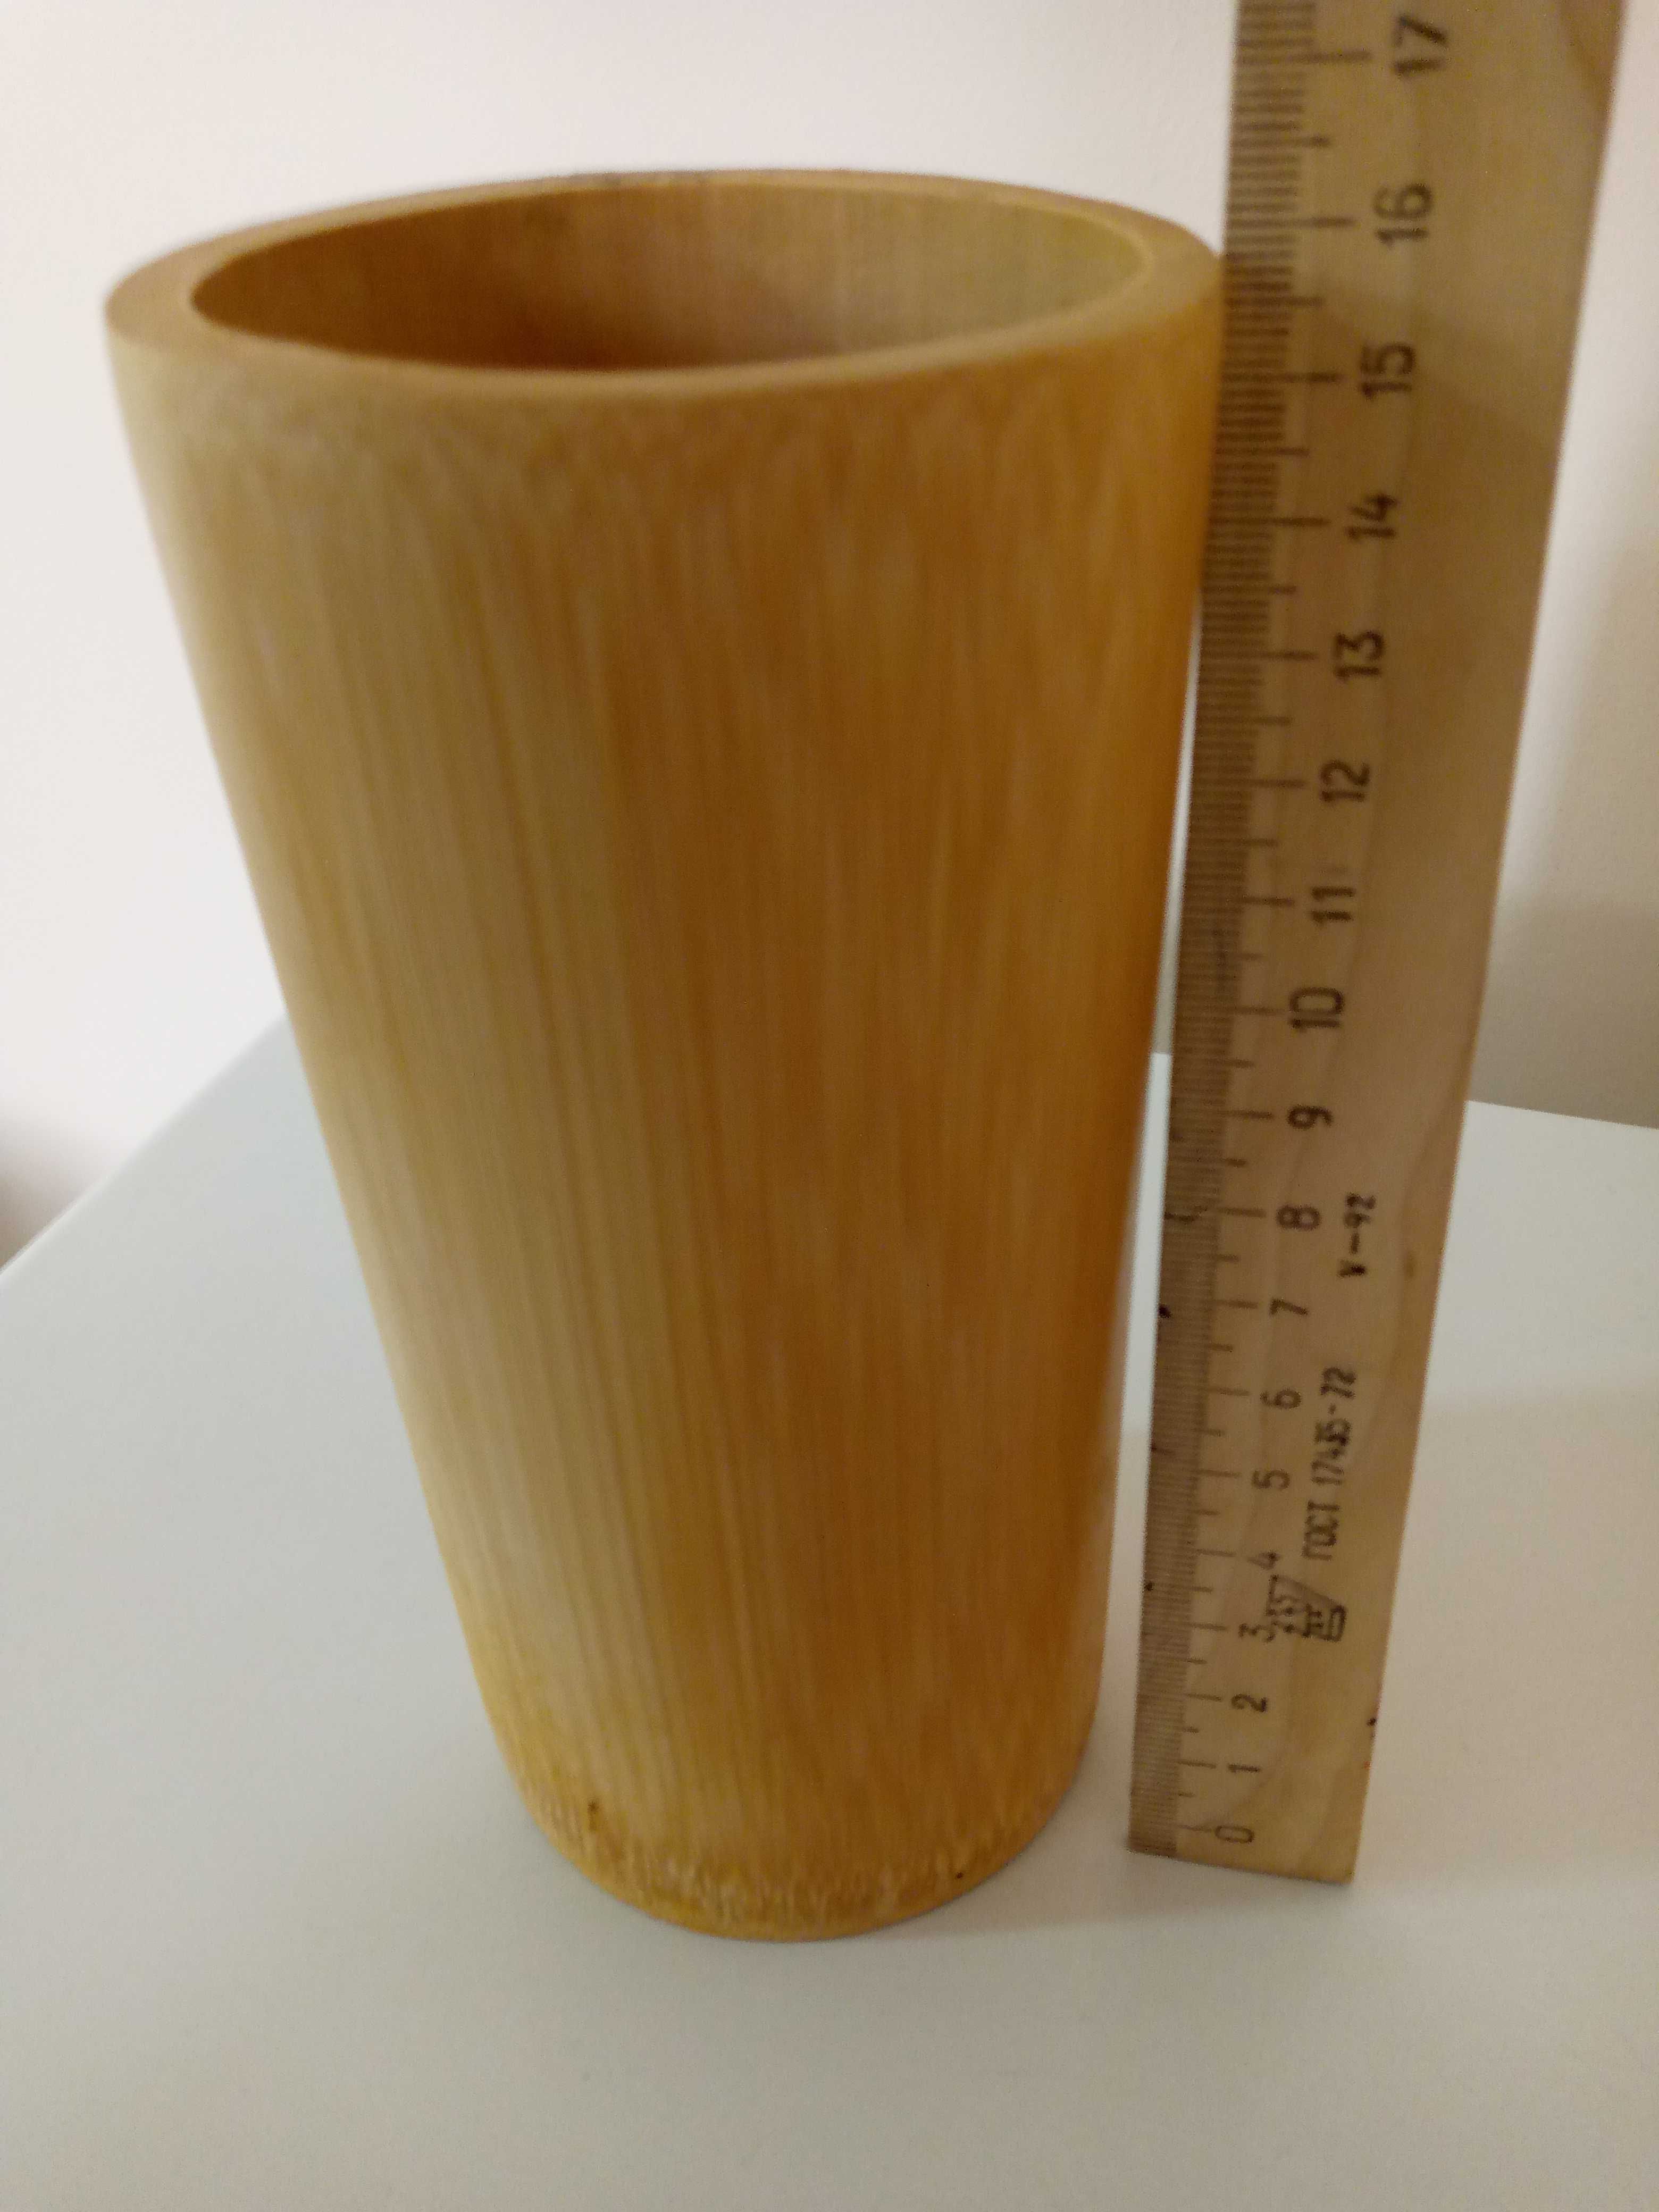 Стакан ваза с деревянными кухонными аксессуарами.Цена 30 тыс